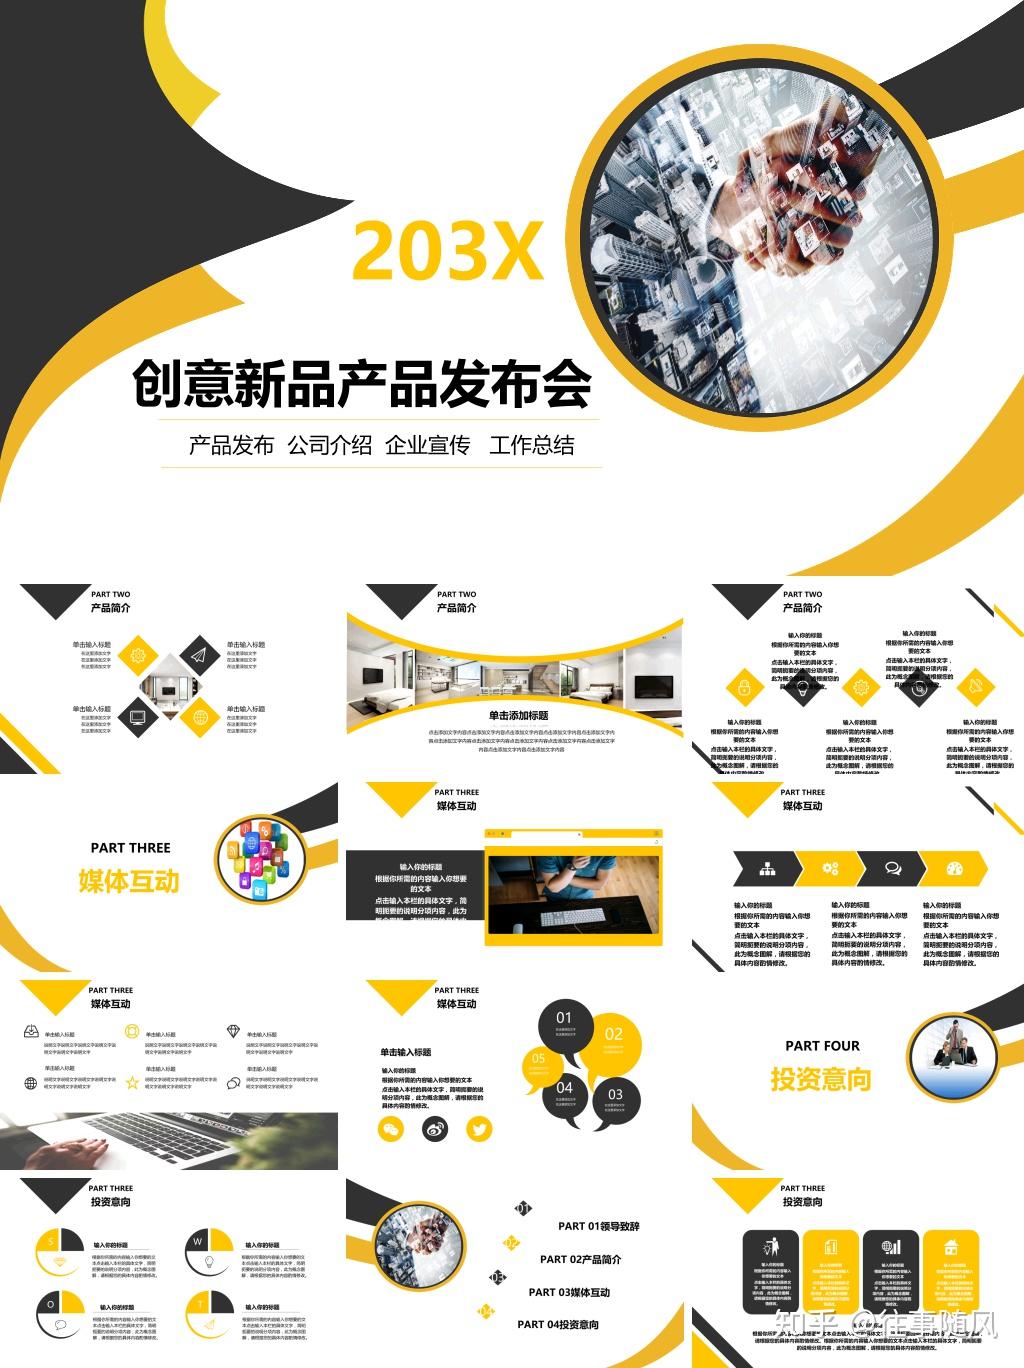 创新未来科技共赢科技产品战略发布会PPT模板-幻灯片下载-文稿PPT